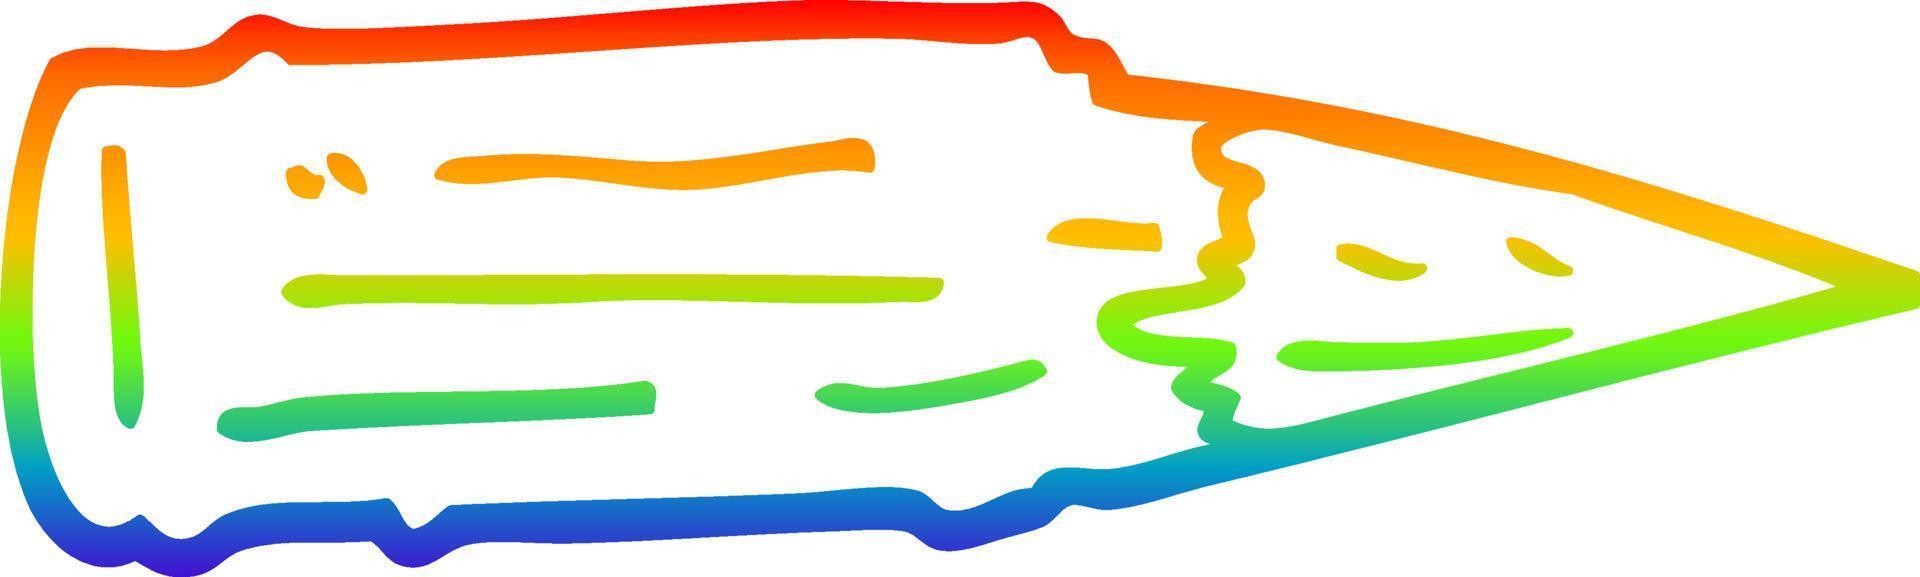 línea de gradiente de arco iris dibujo estaca de madera de dibujos animados vector